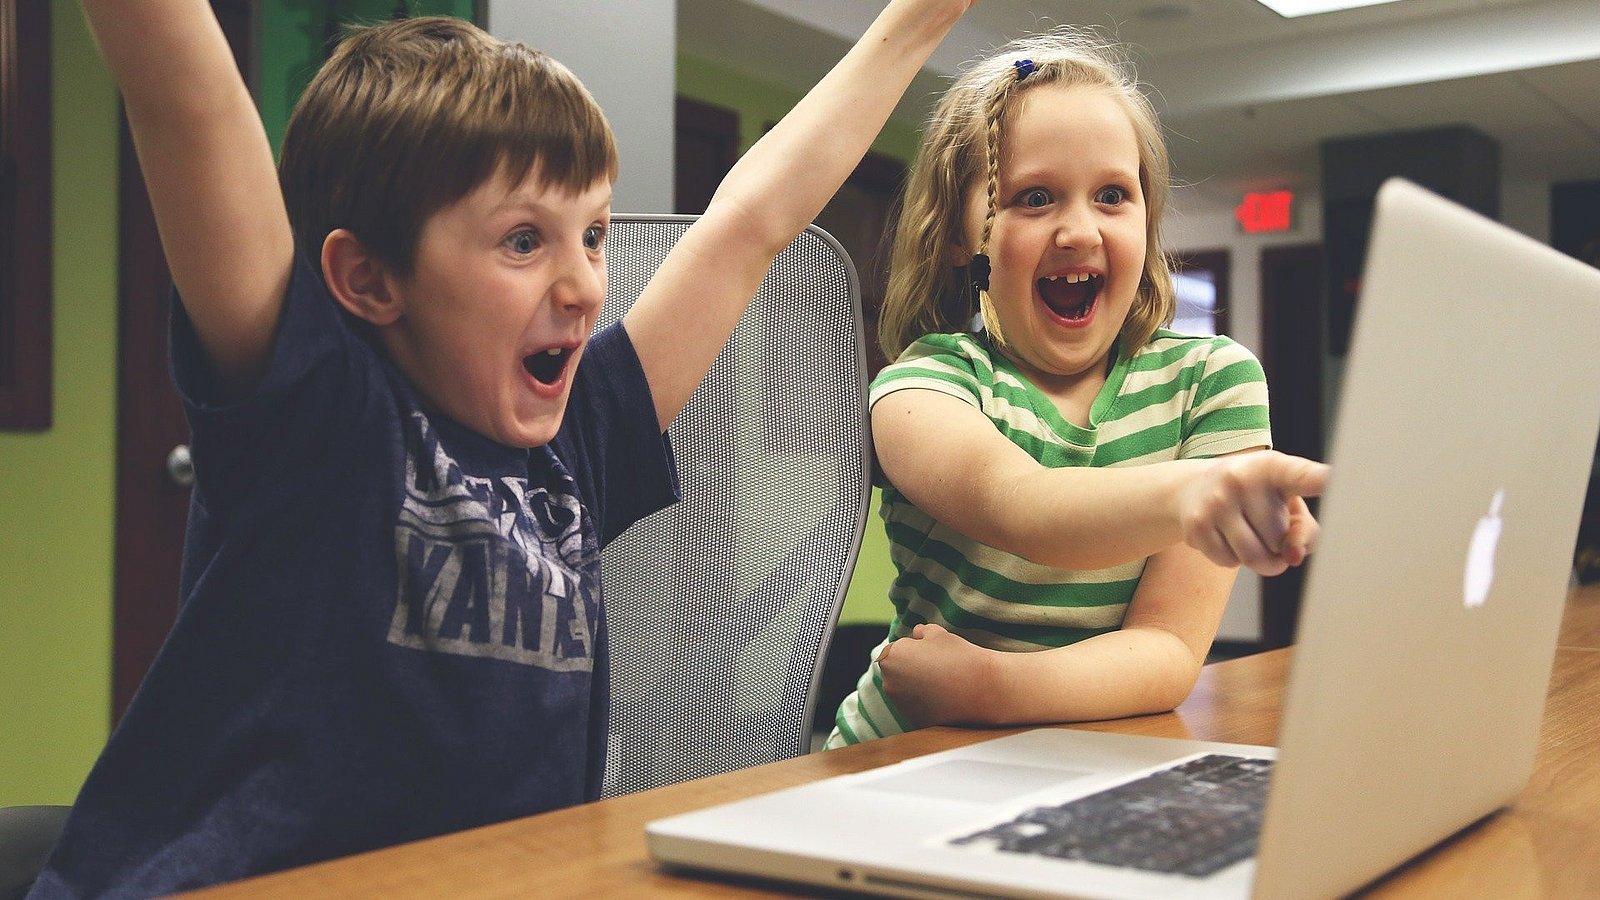 Kinder sitzen vor einem Laptop und freuen sich über einen Sieg.